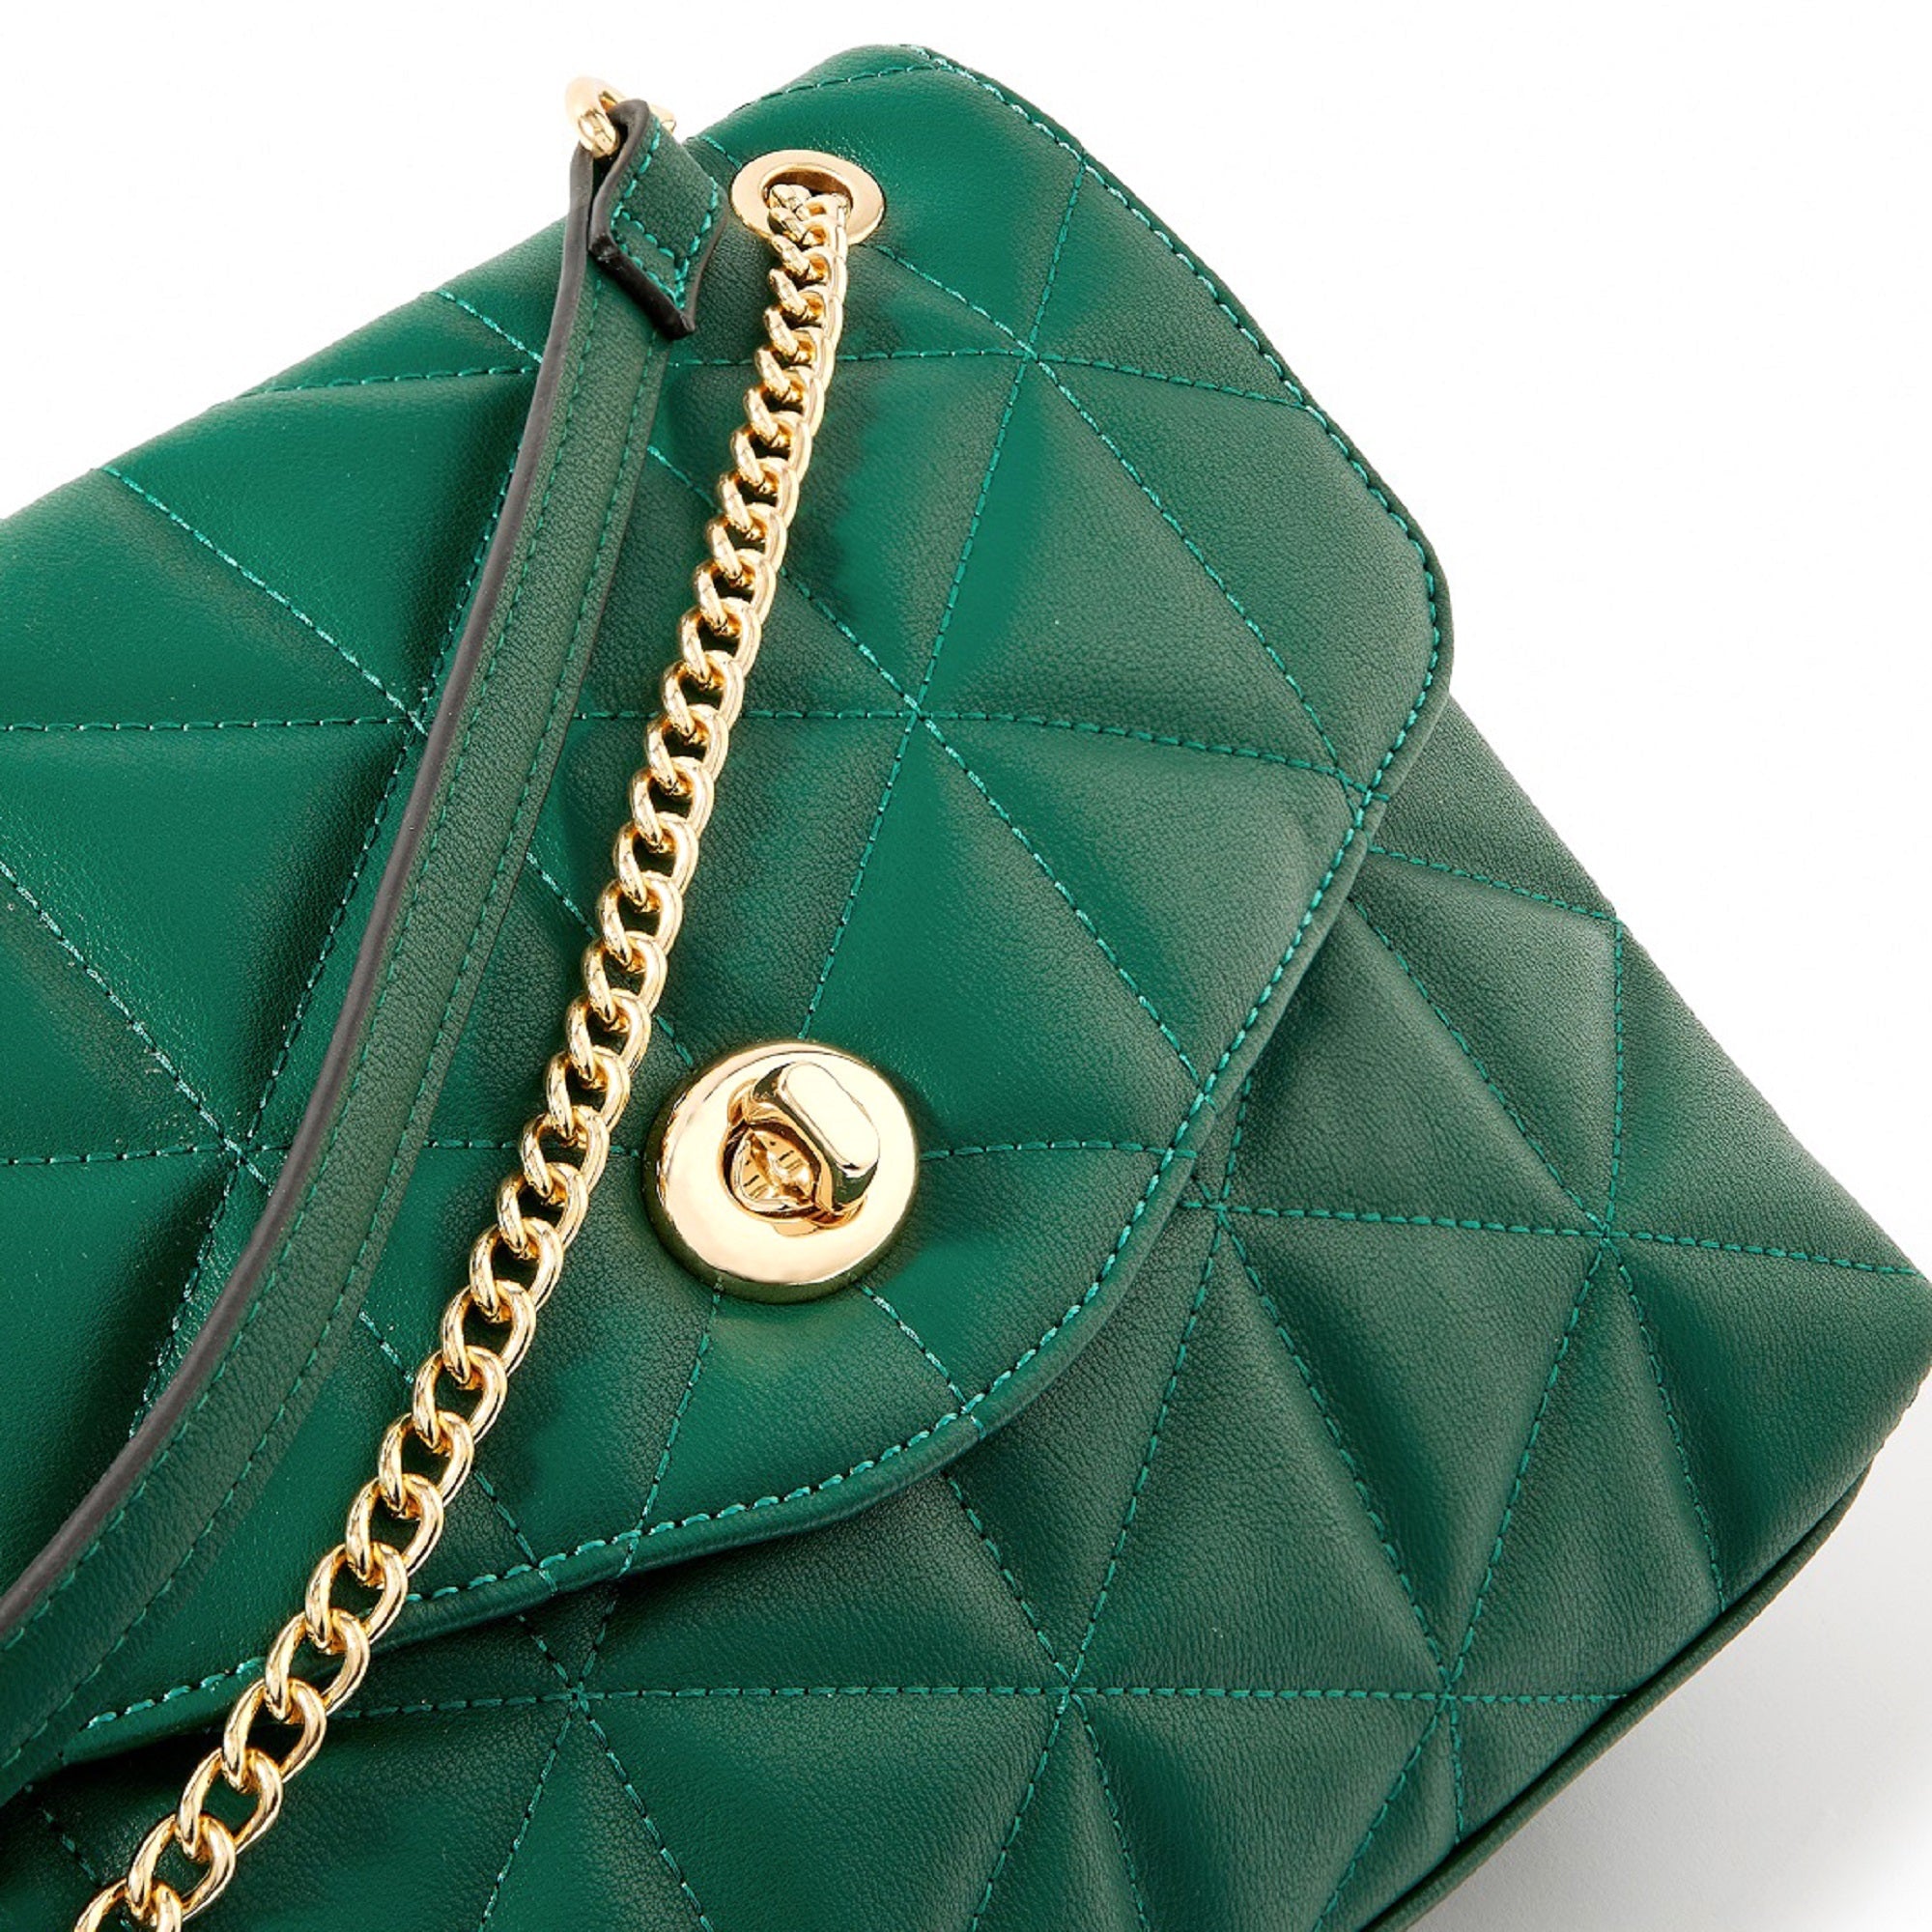 Genie Buzz 19 Inch Green School Bag (Green, 36 L) : Amazon.in: Fashion